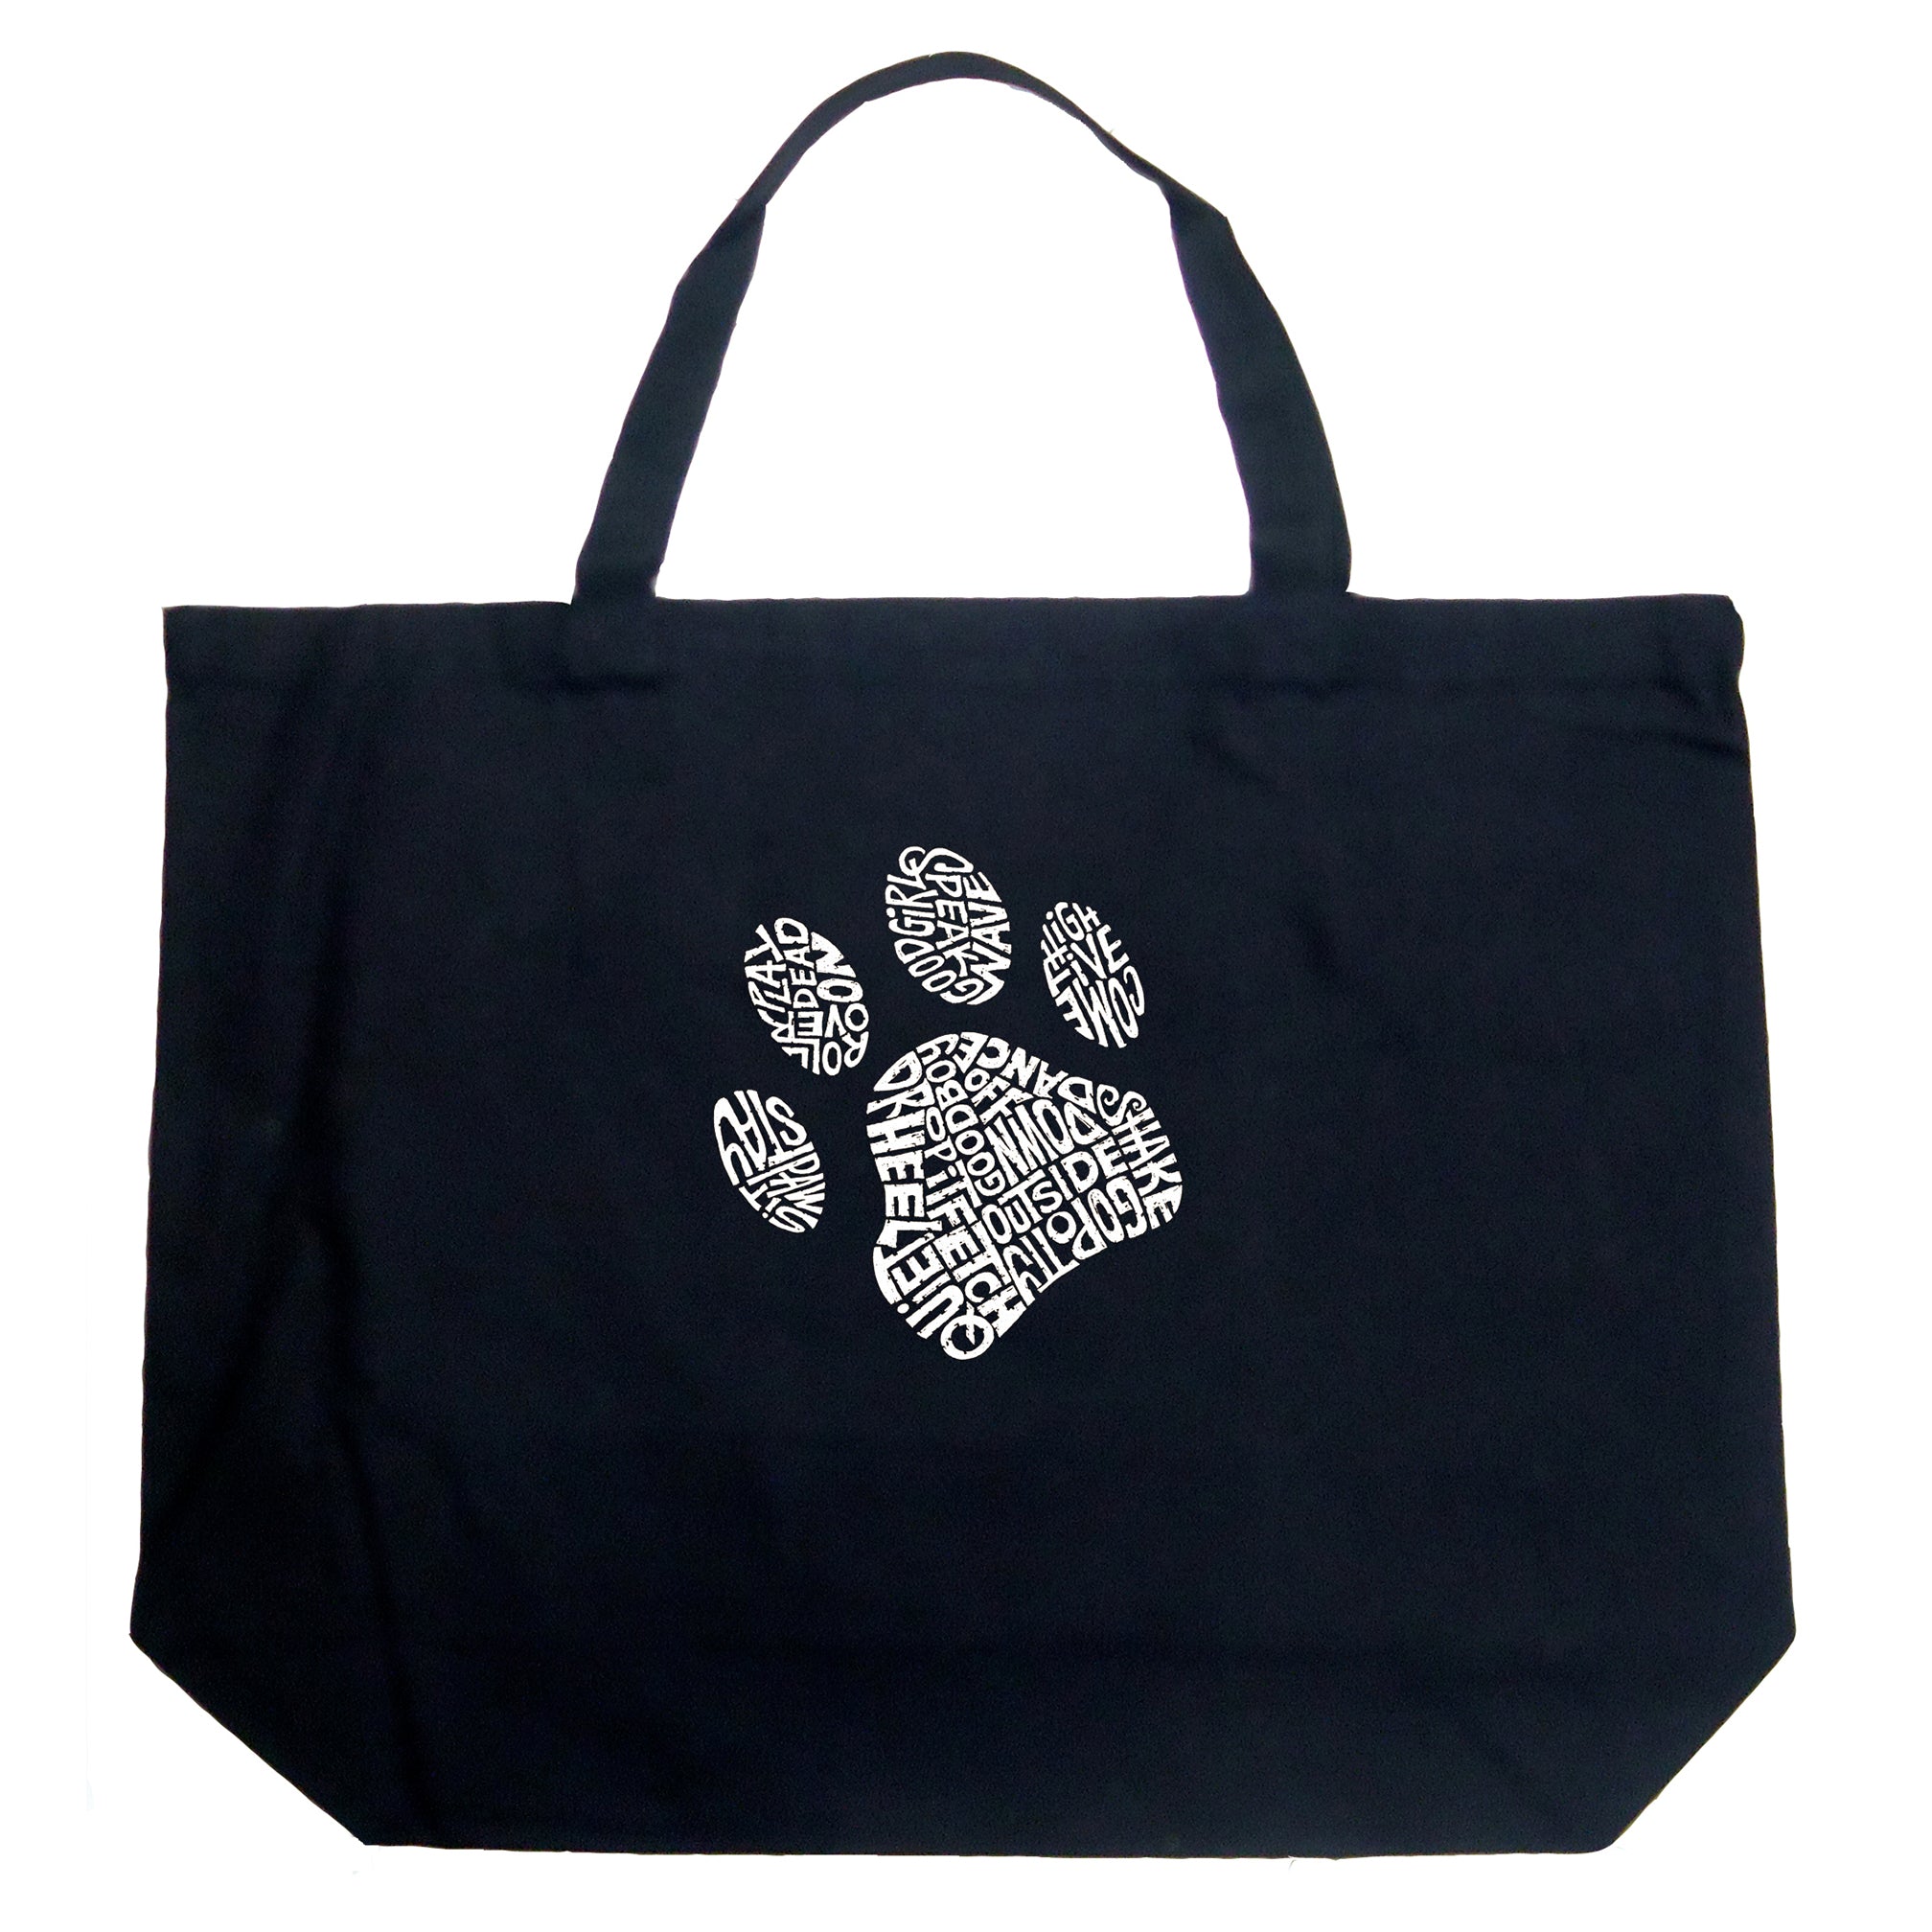 Dog Paw - Large Word Art Tote Bag - Large - Black